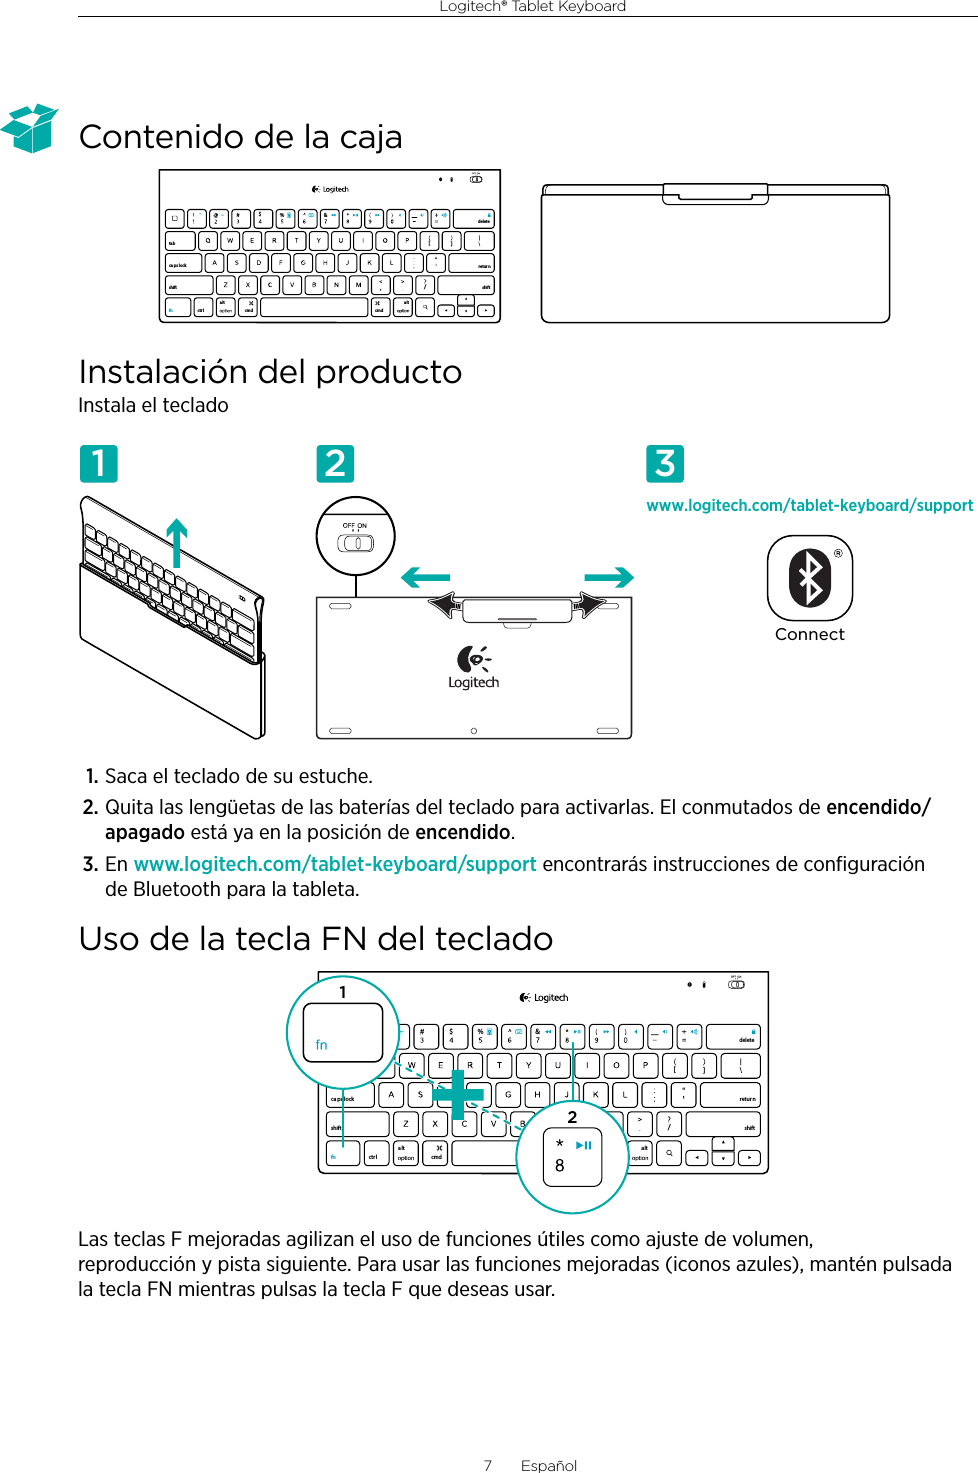 Logitech® Tablet Keyboard7  EspañolContenido de la cajaInstalación del productoInstala el teclado1. Saca el teclado de su estuche.2. Quita las lengüetas de las baterías del teclado para activarlas. El conmutados de encendido/apagado está ya en la posición de encendido.3. En www.logitech.com/tablet-keyboard/support encontrarás instrucciones de conﬁguración de Bluetooth para la tableta.Uso de la tecla FN del tecladoLas teclas F mejoradas agilizan el uso de funciones útiles como ajuste de volumen, reproducción y pista siguiente. Para usar las funciones mejoradas (iconos azules), mantén pulsada la tecla FN mientras pulsas la tecla F que deseas usar.,/[[&amp;ctr lalt a lttabca ps lockshift shift$%retur ndeletecmd cmdfnwww.logitech.com/tablet-keyboard/supportConnect1 2 3,/[[&amp;ctr lalt alttabca ps lockshift shift$%retur ndeletecmd cmdfn12